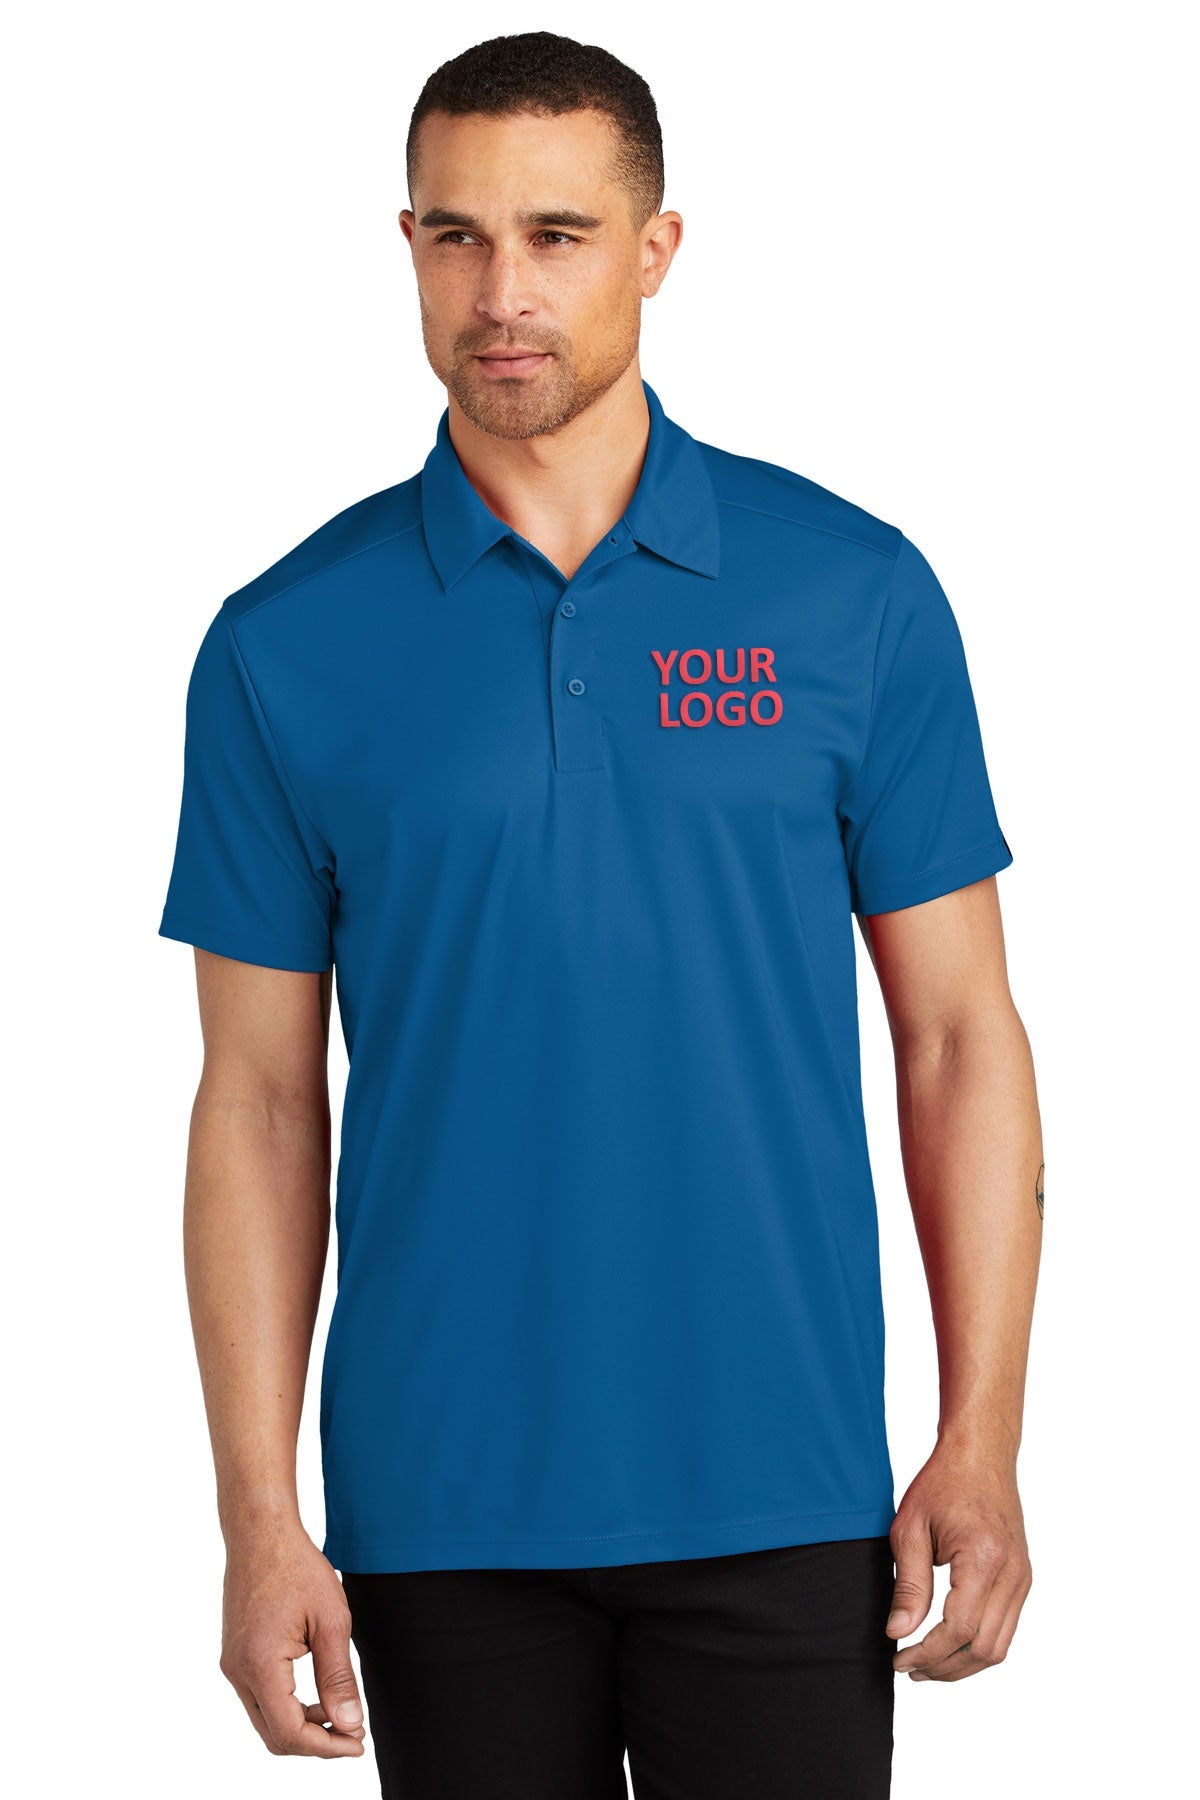 OGIO Bolt Blue OG125 company polo shirts embroidery